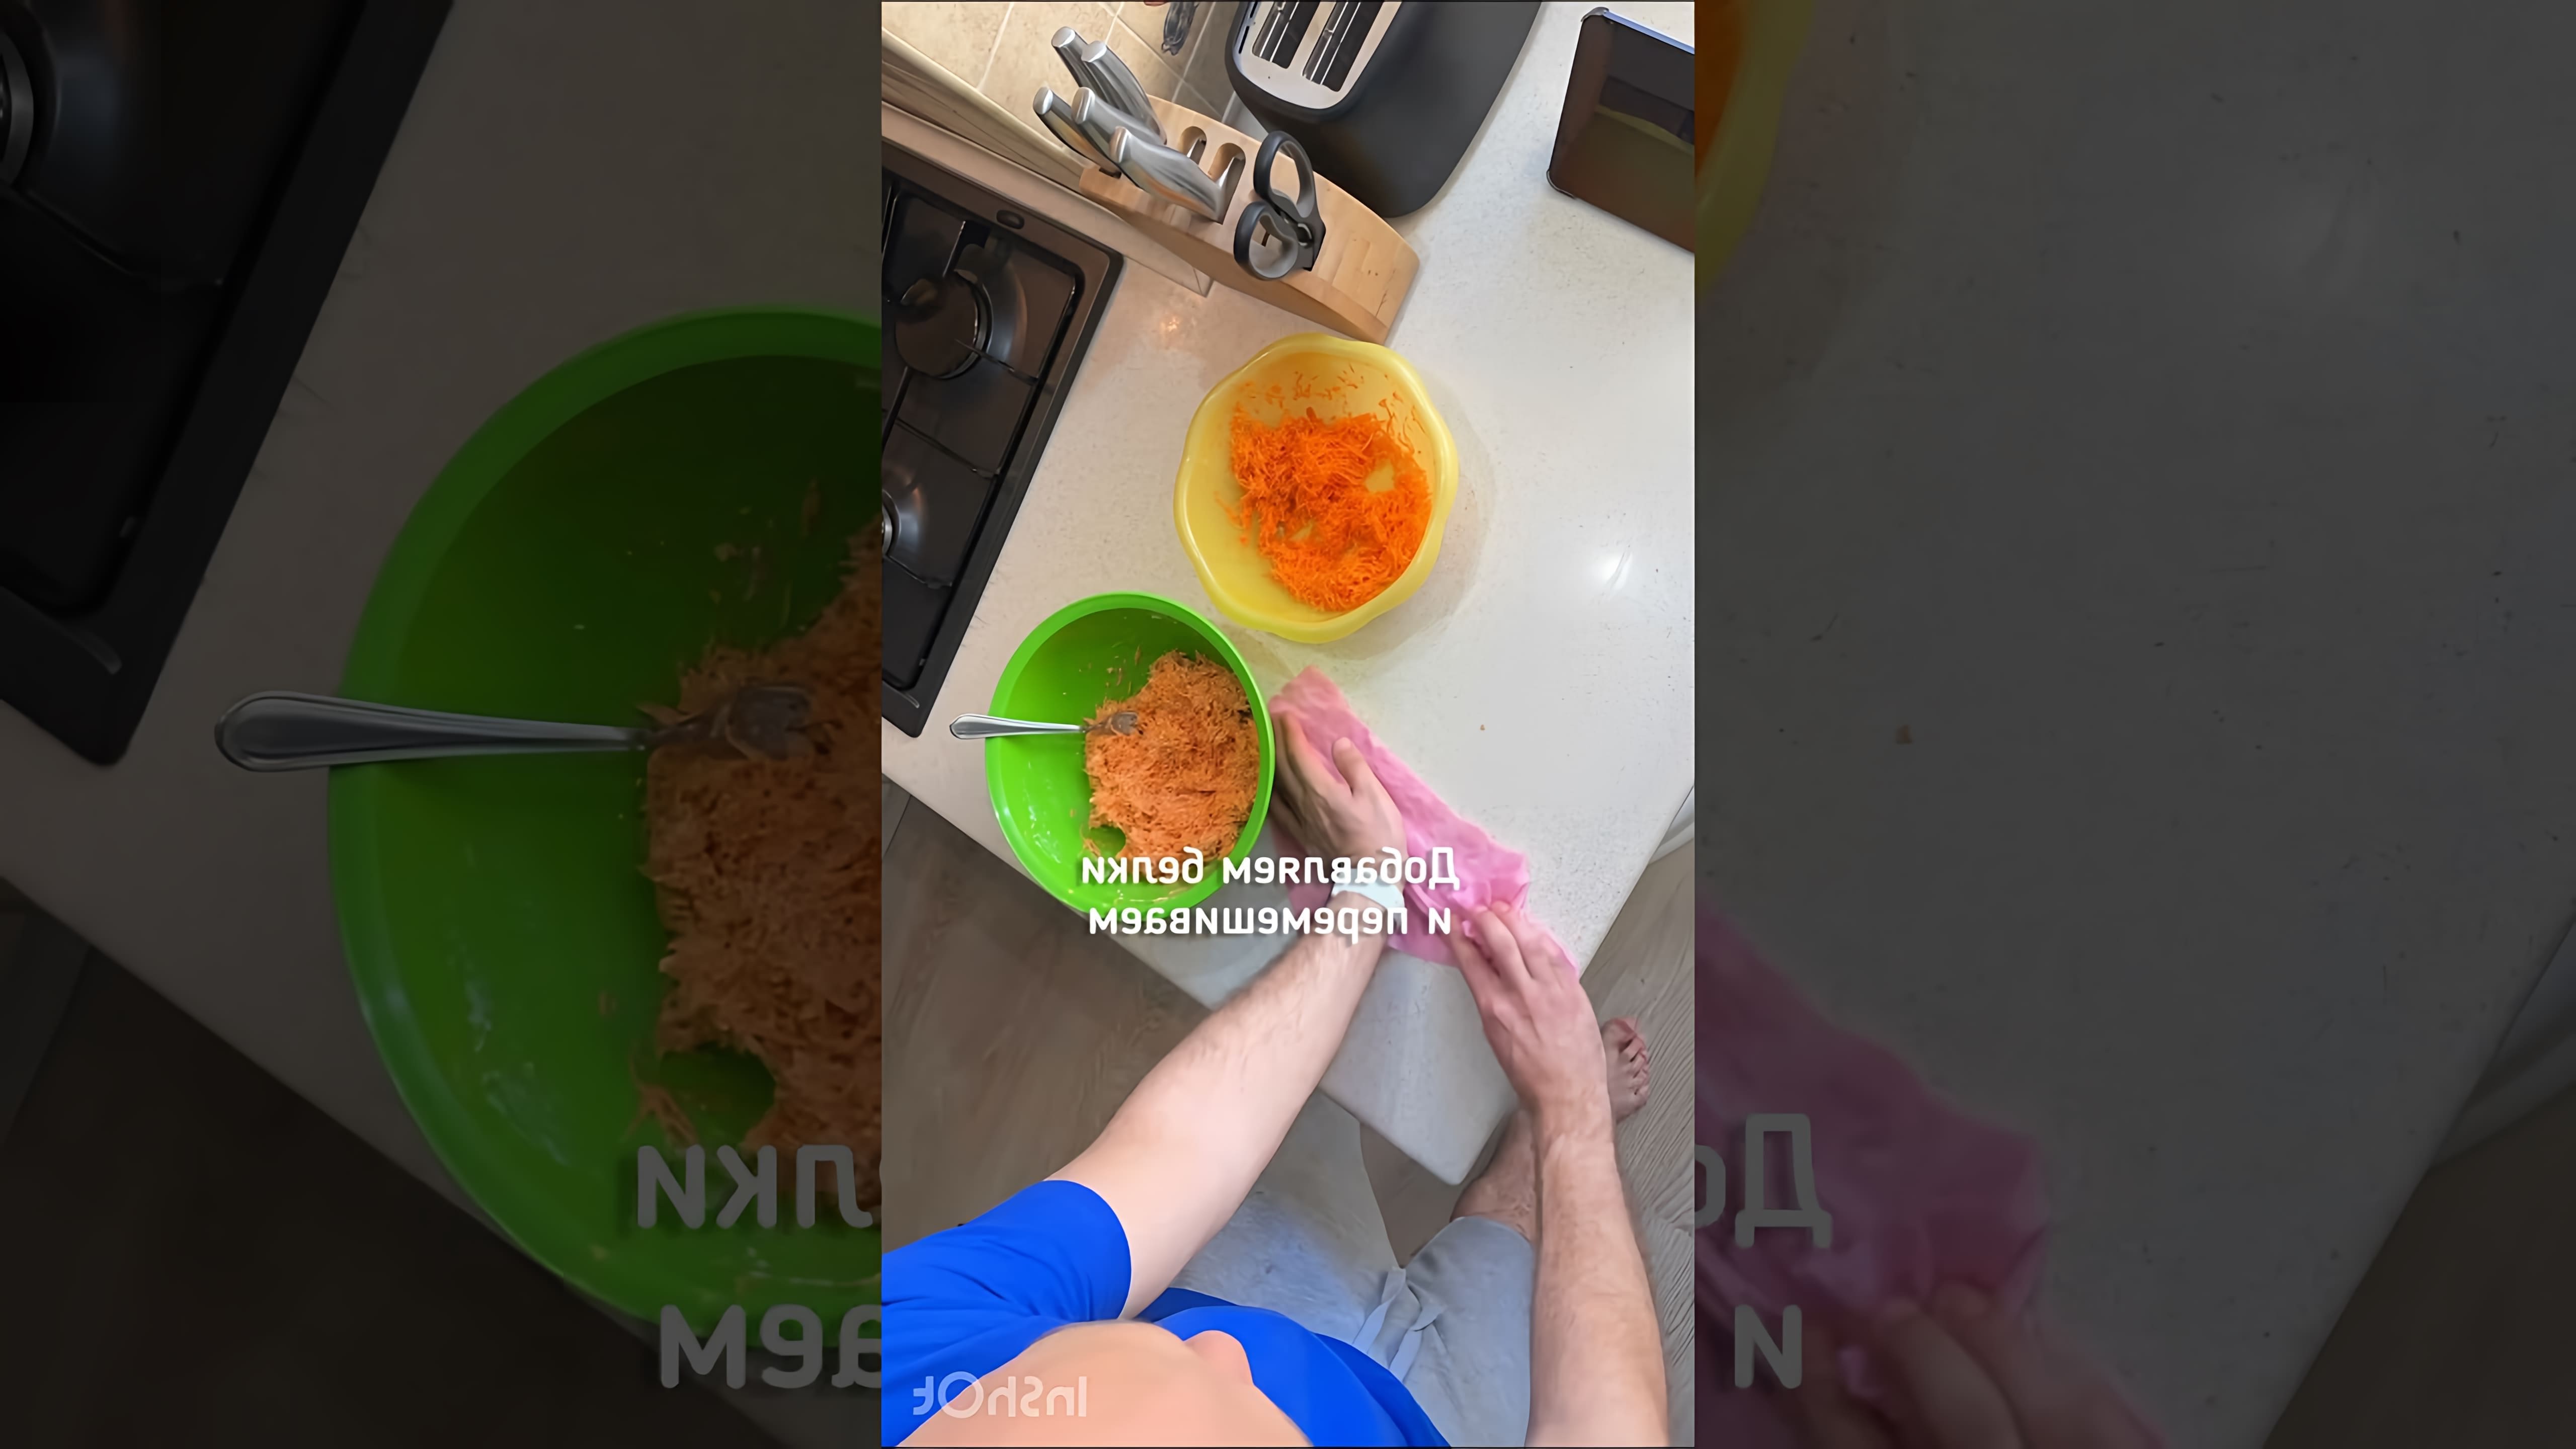 Морковная запеканка - это вкусное и полезное блюдо, которое можно приготовить в домашних условиях